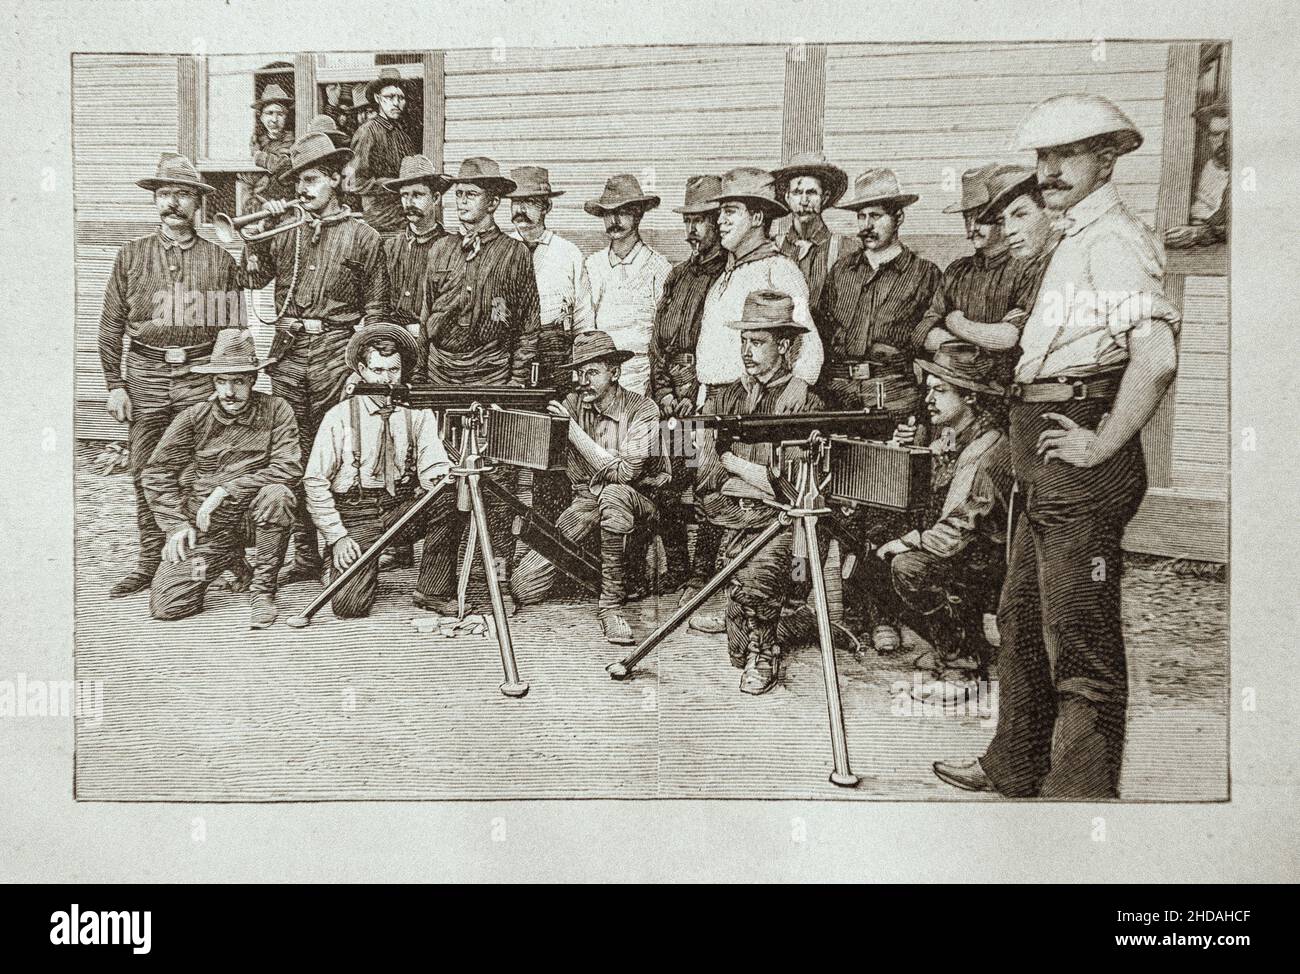 Vintage-Gravur des Spanisch-Amerikanischen Krieges: Die "Rough-Riders" von Oberst Roosevelt (1st United States Volunteer Cavalry). 1898 Die Spanisch-Amerikanische Wa Stockfoto